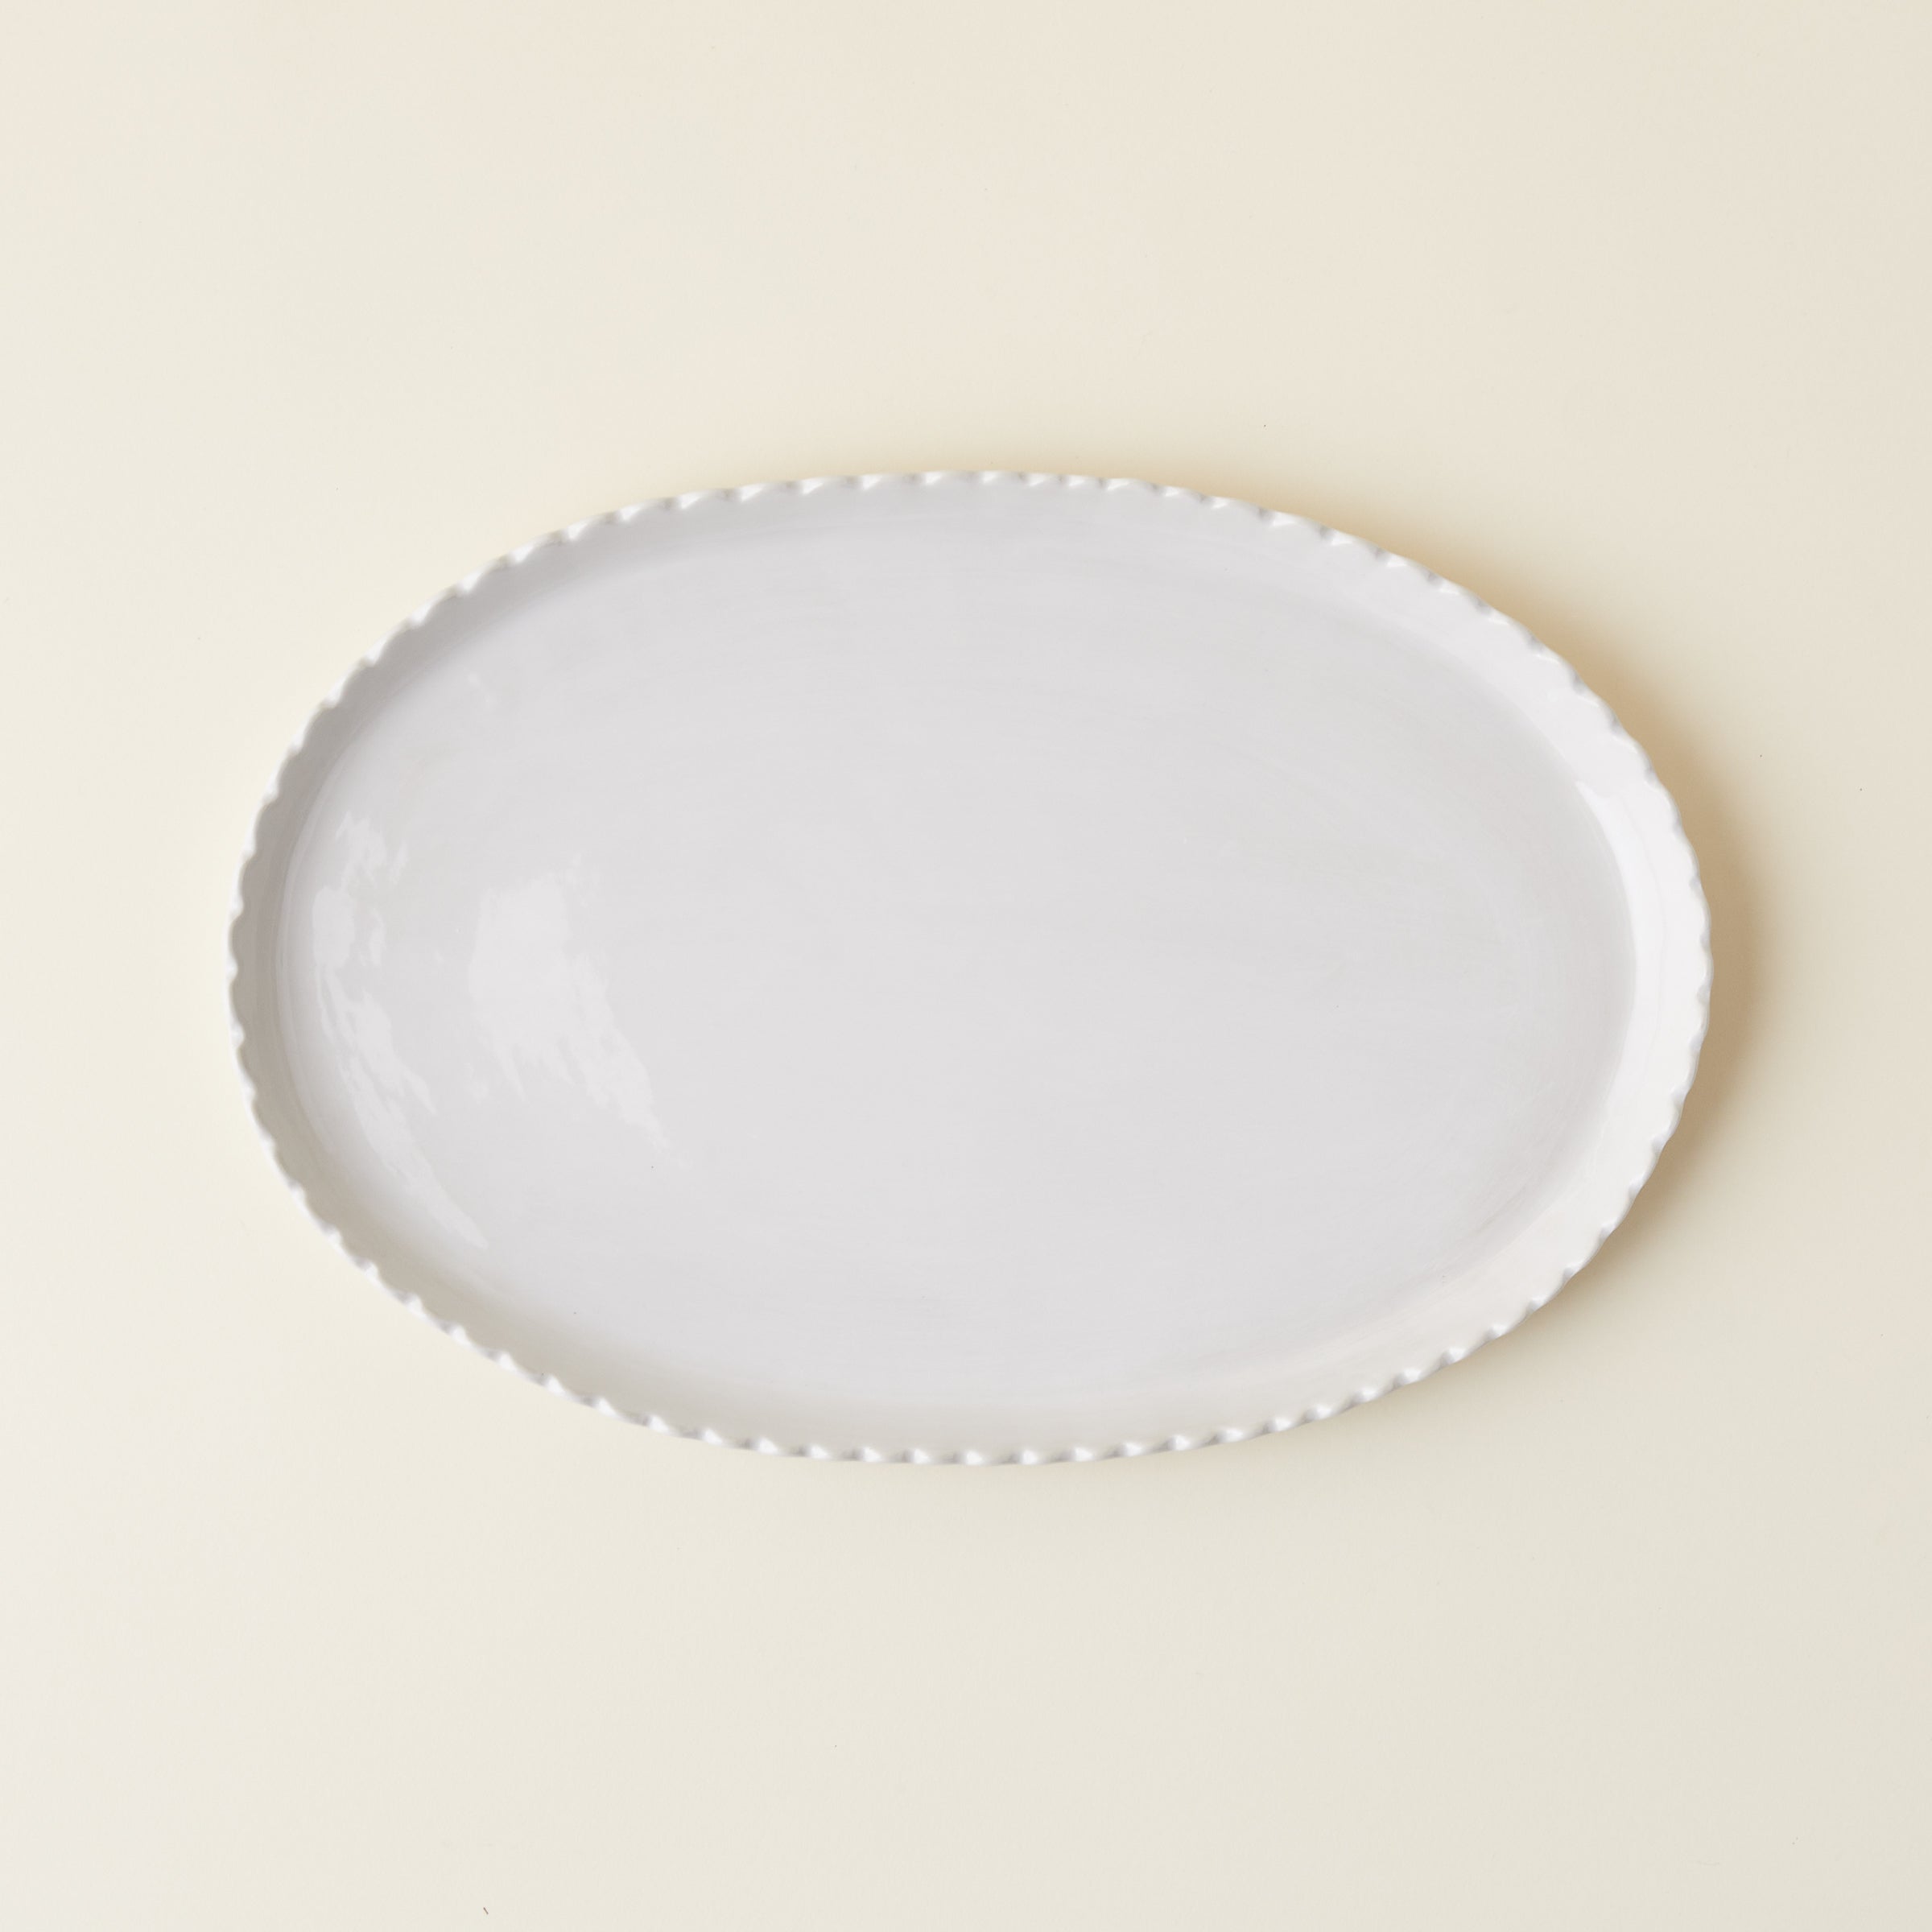 Scalloped Oval Platter